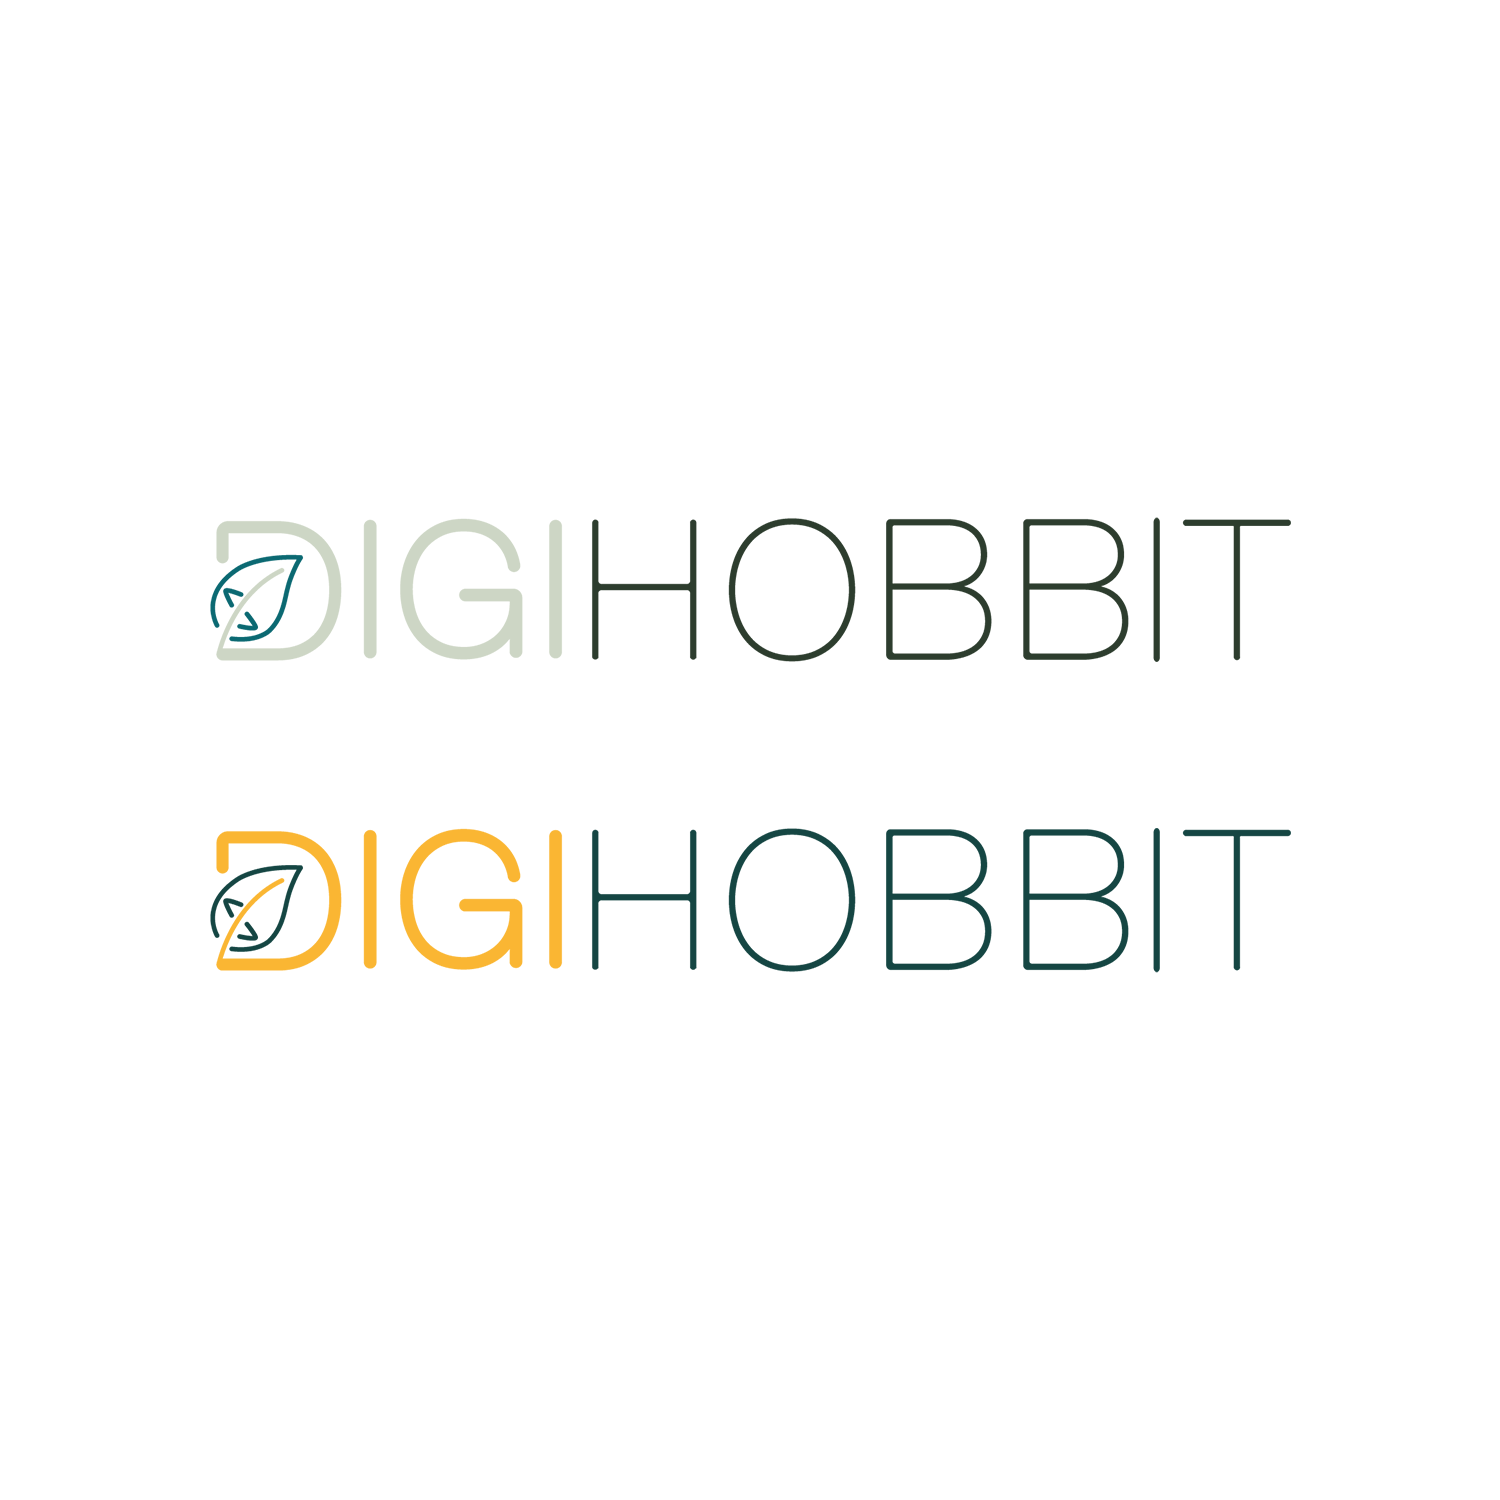 Logo's onder elkaar-digihobbit